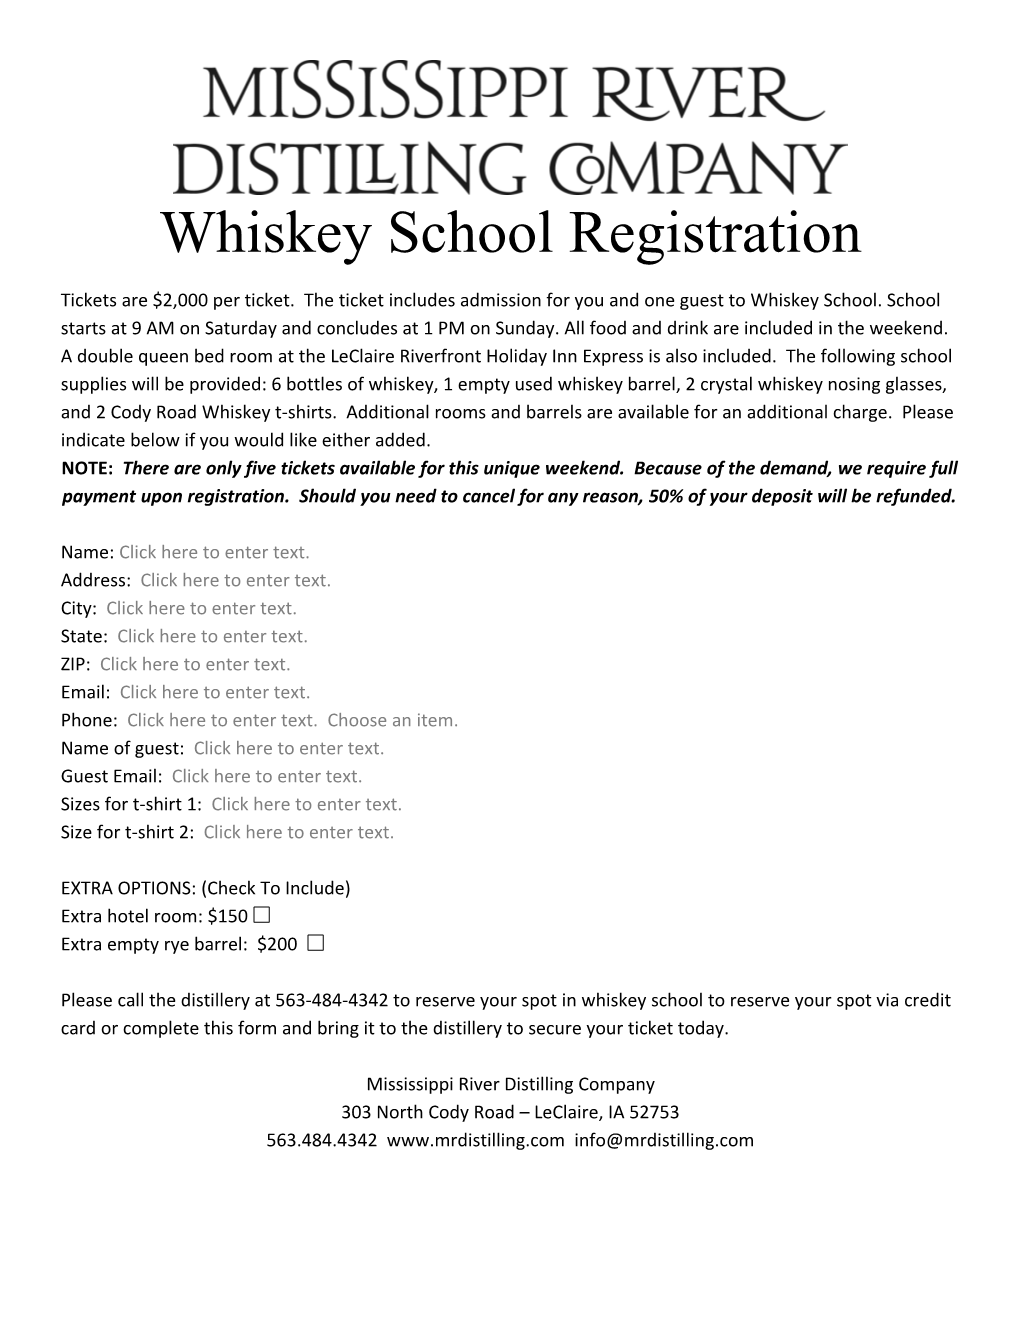 Whiskey School Registration